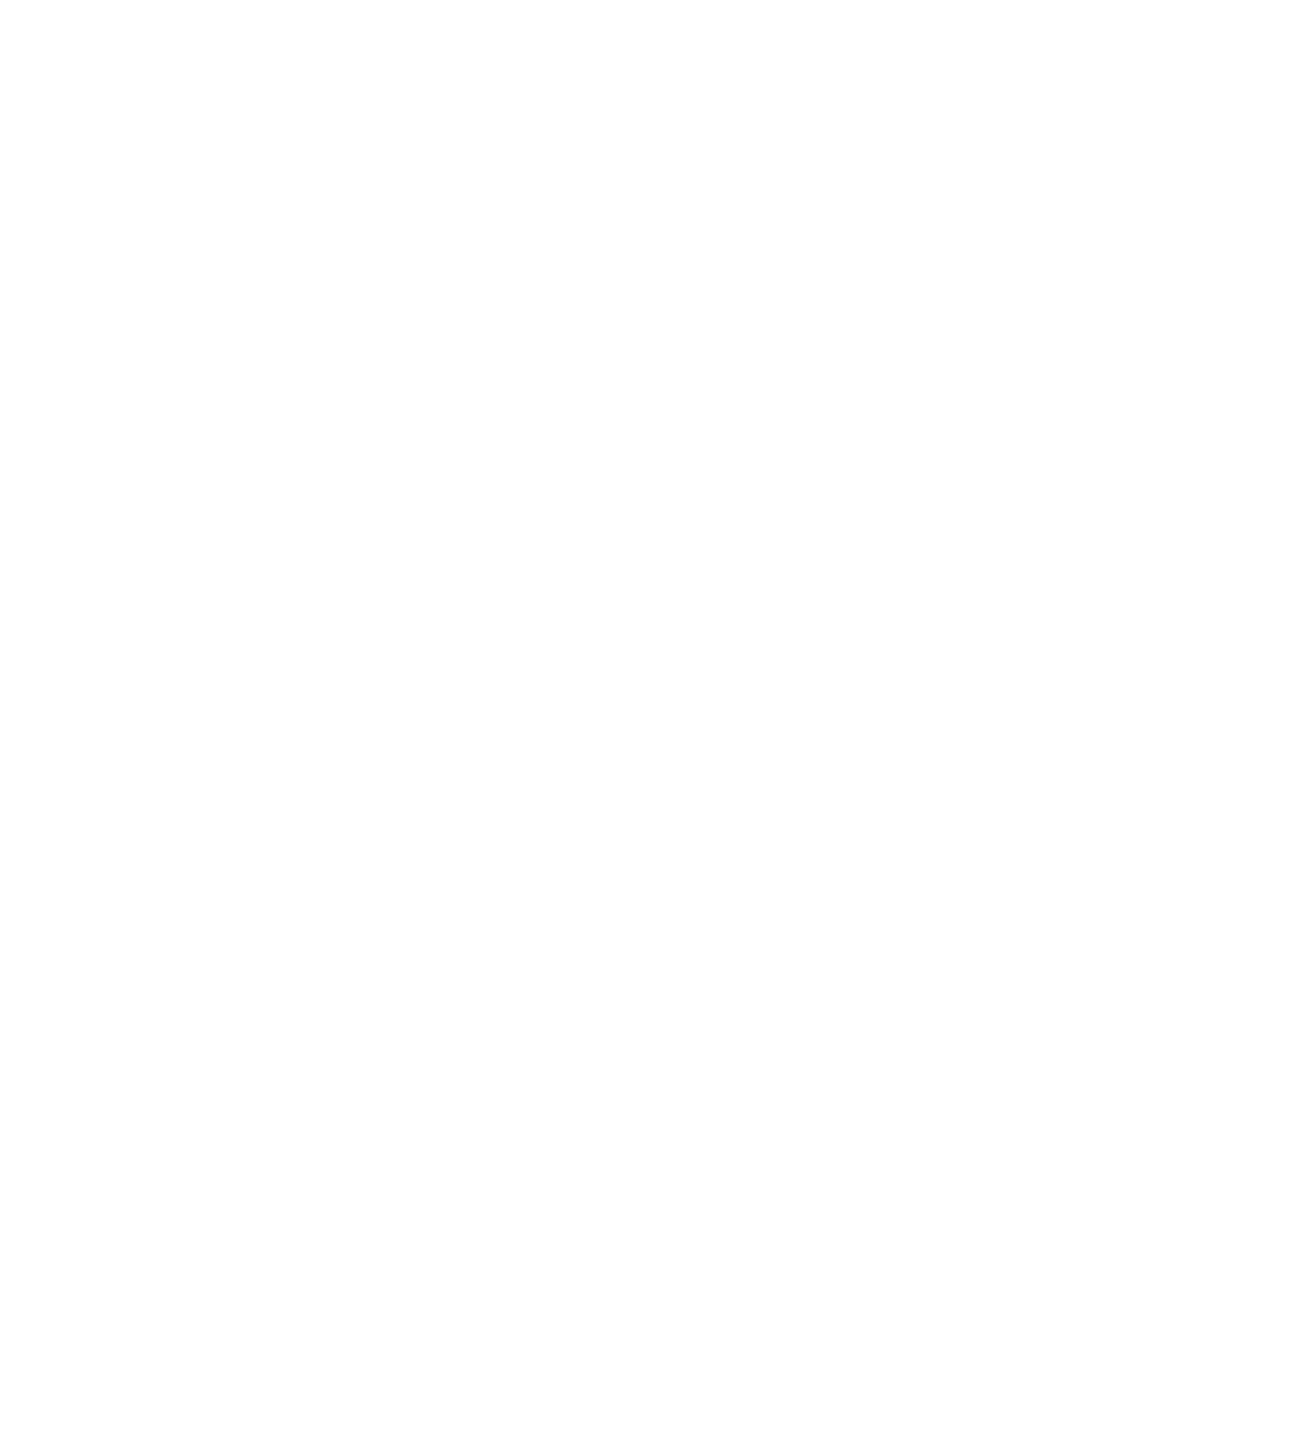 Mr. Pave